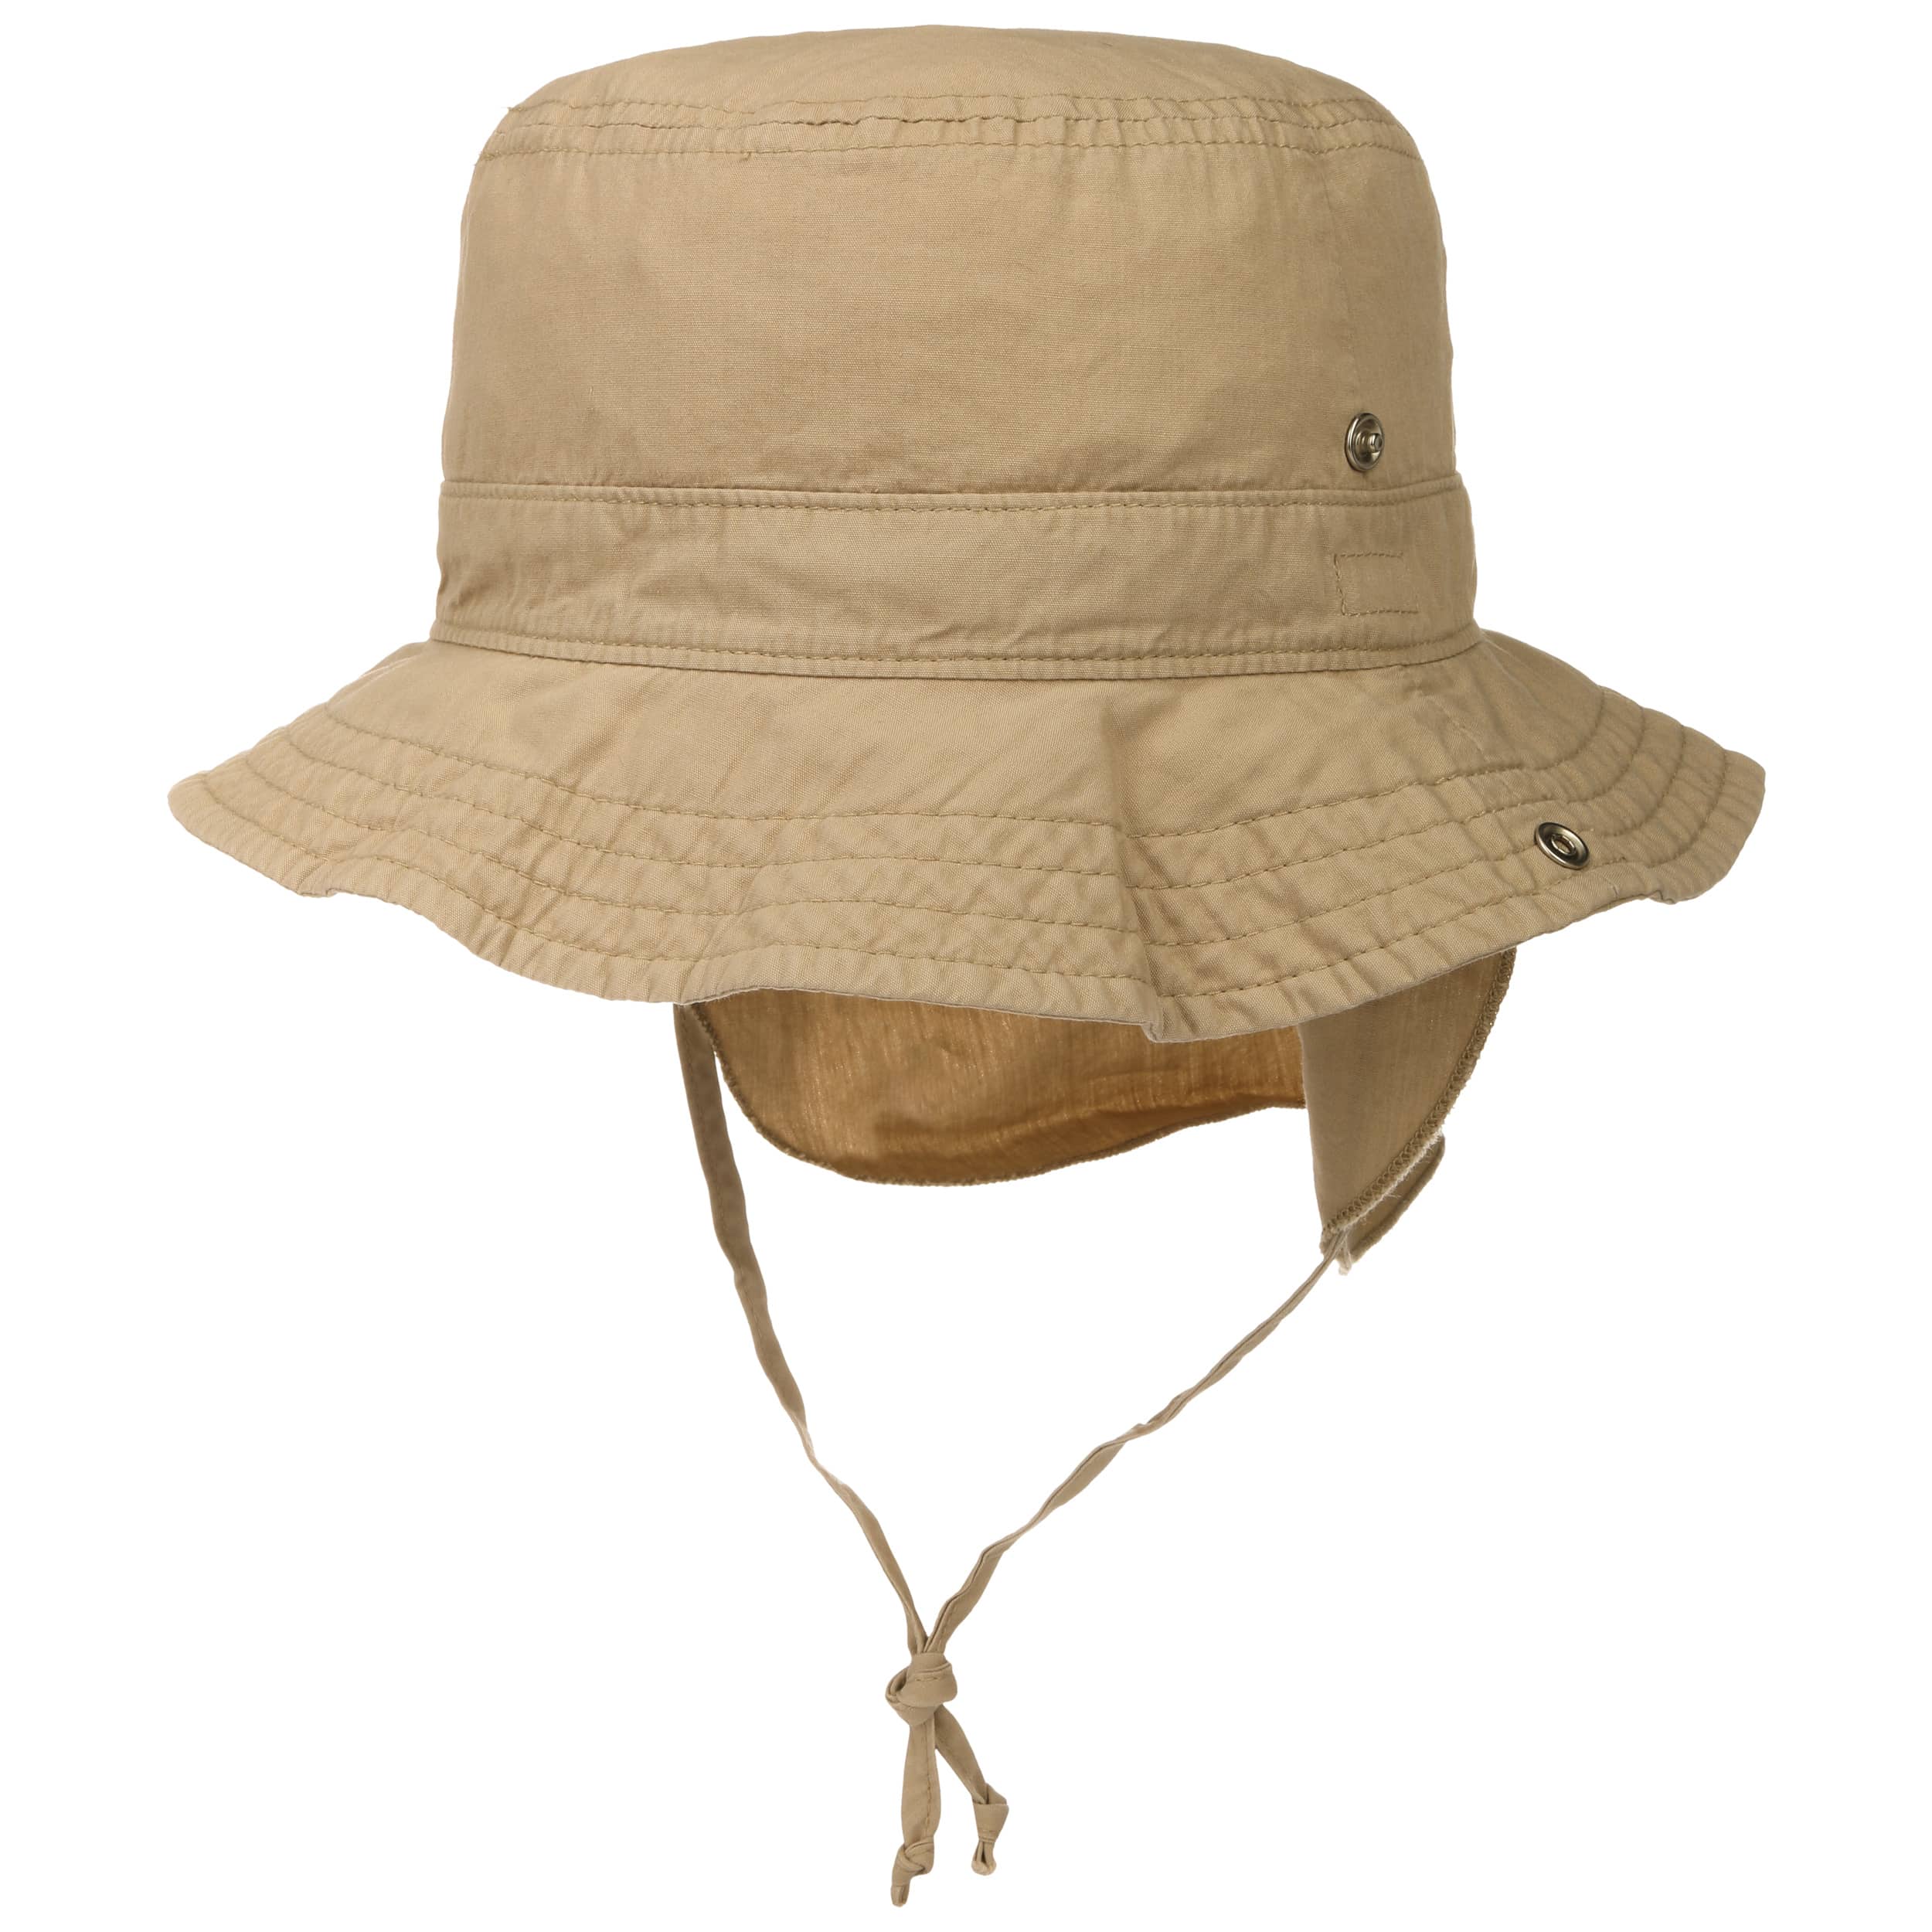 NUOVO HAT hat giungla con zanzara Testa Rete zanzare protezione cappello hat safari tropicale 